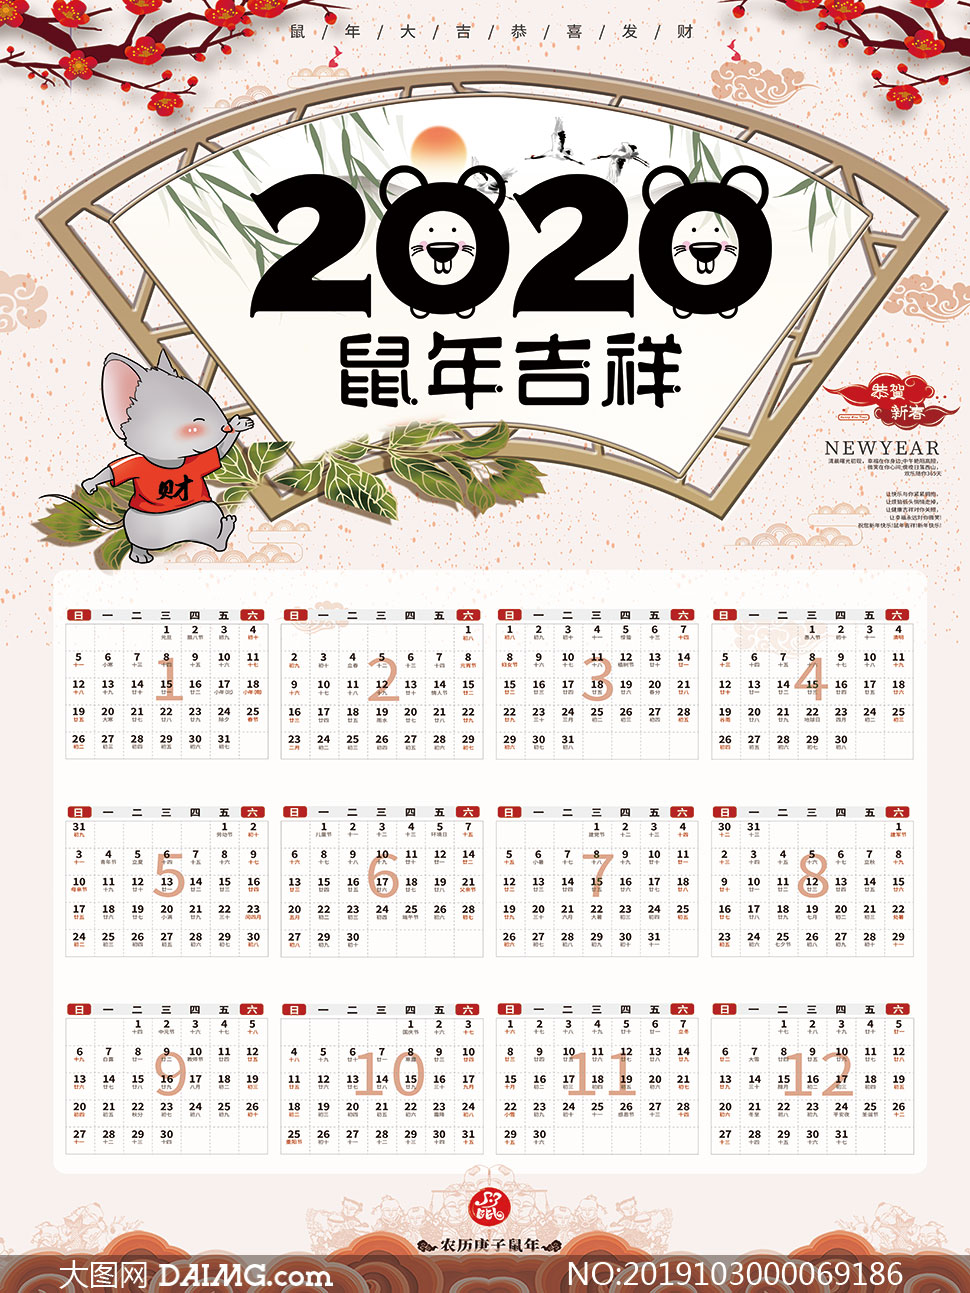 psd素材 日历素材 > 素材信息          2020鼠年大吉简约年历设计